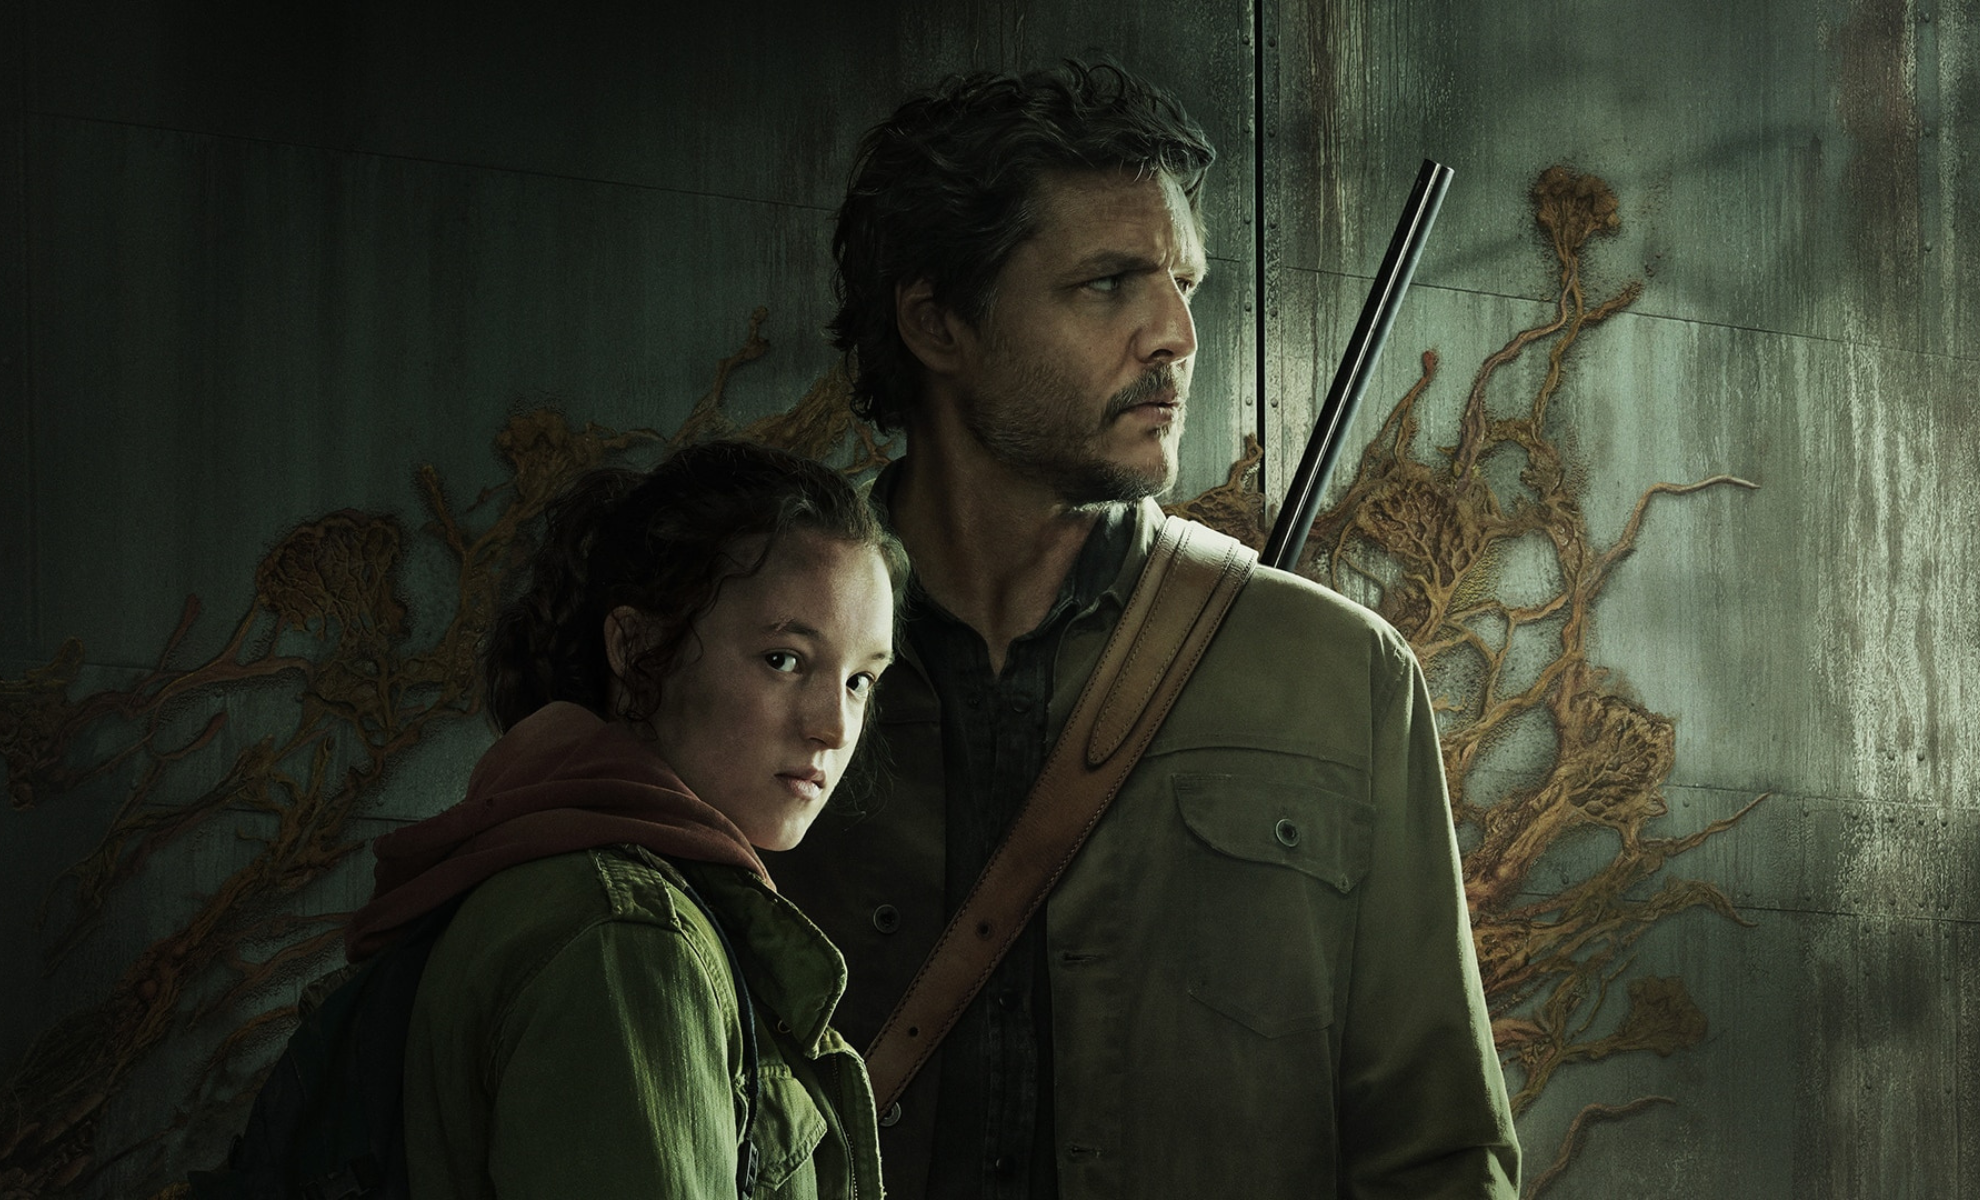 The Last of Us Enfin disponible sur Amazon Prime Video !